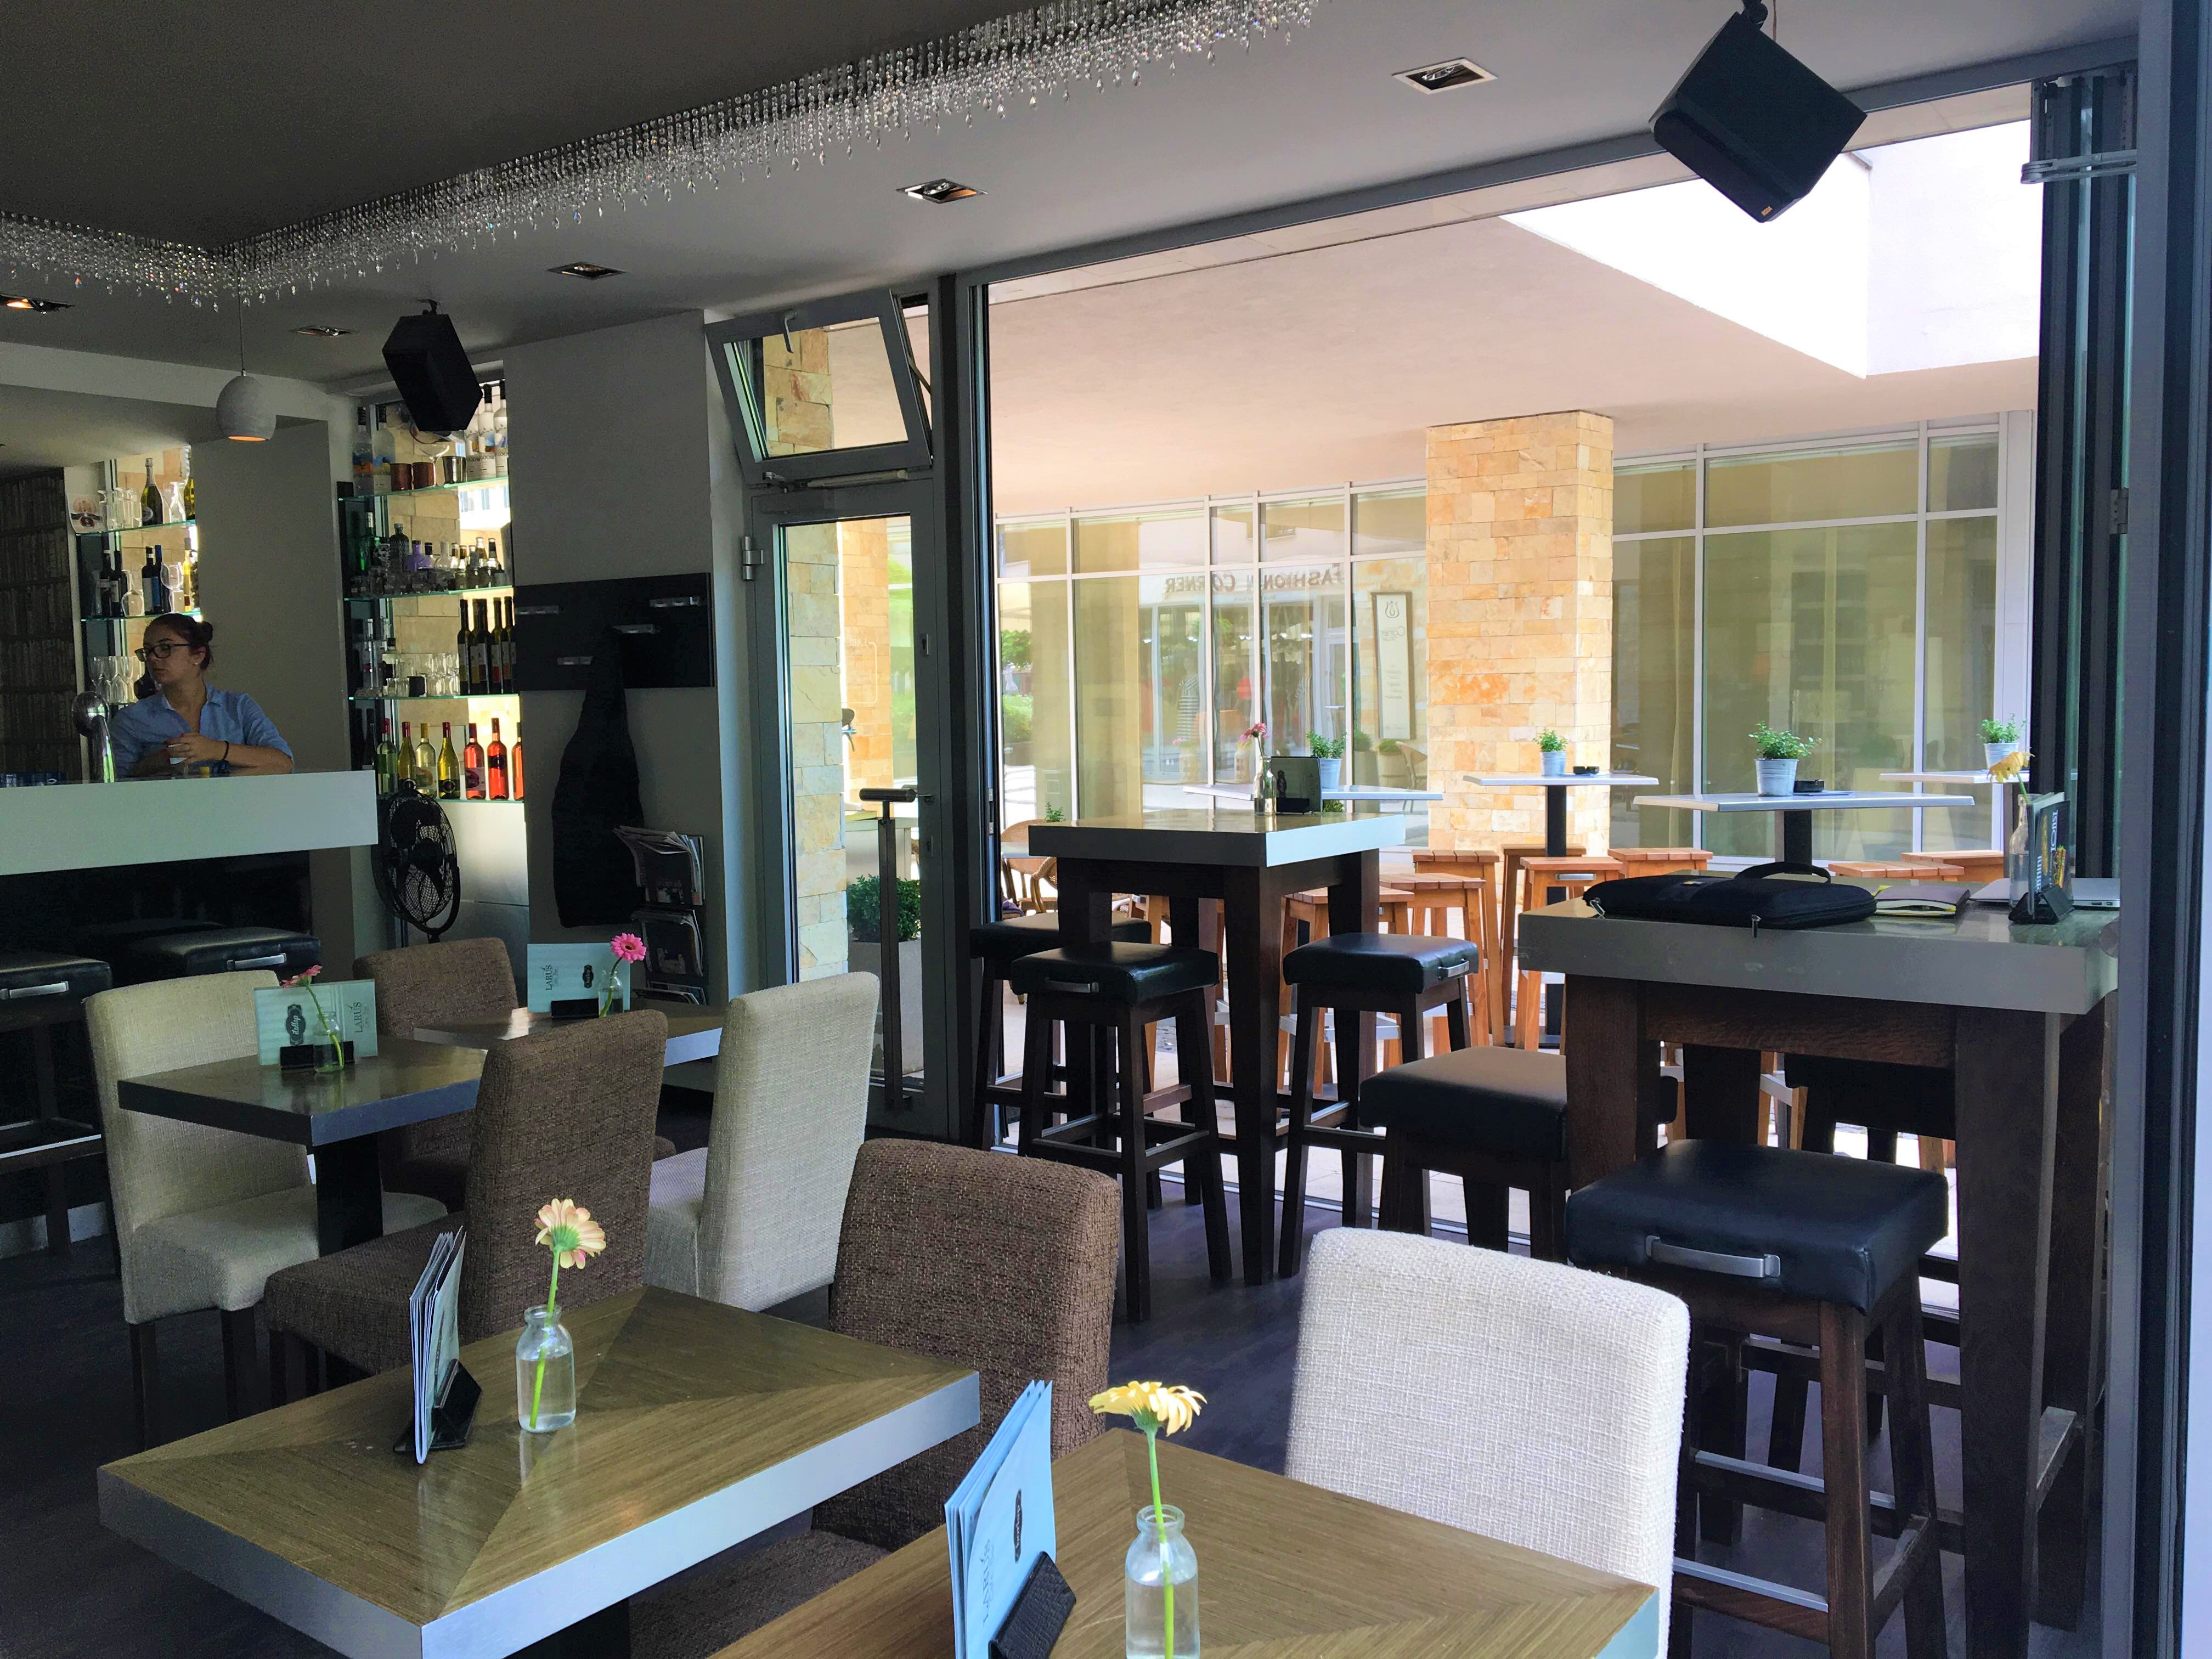 A Larus Cafe Bar Balatonfüredi part melletti sétányán található meg, ahol reggelizni, koktélozni, de kávézni is betérhetünk